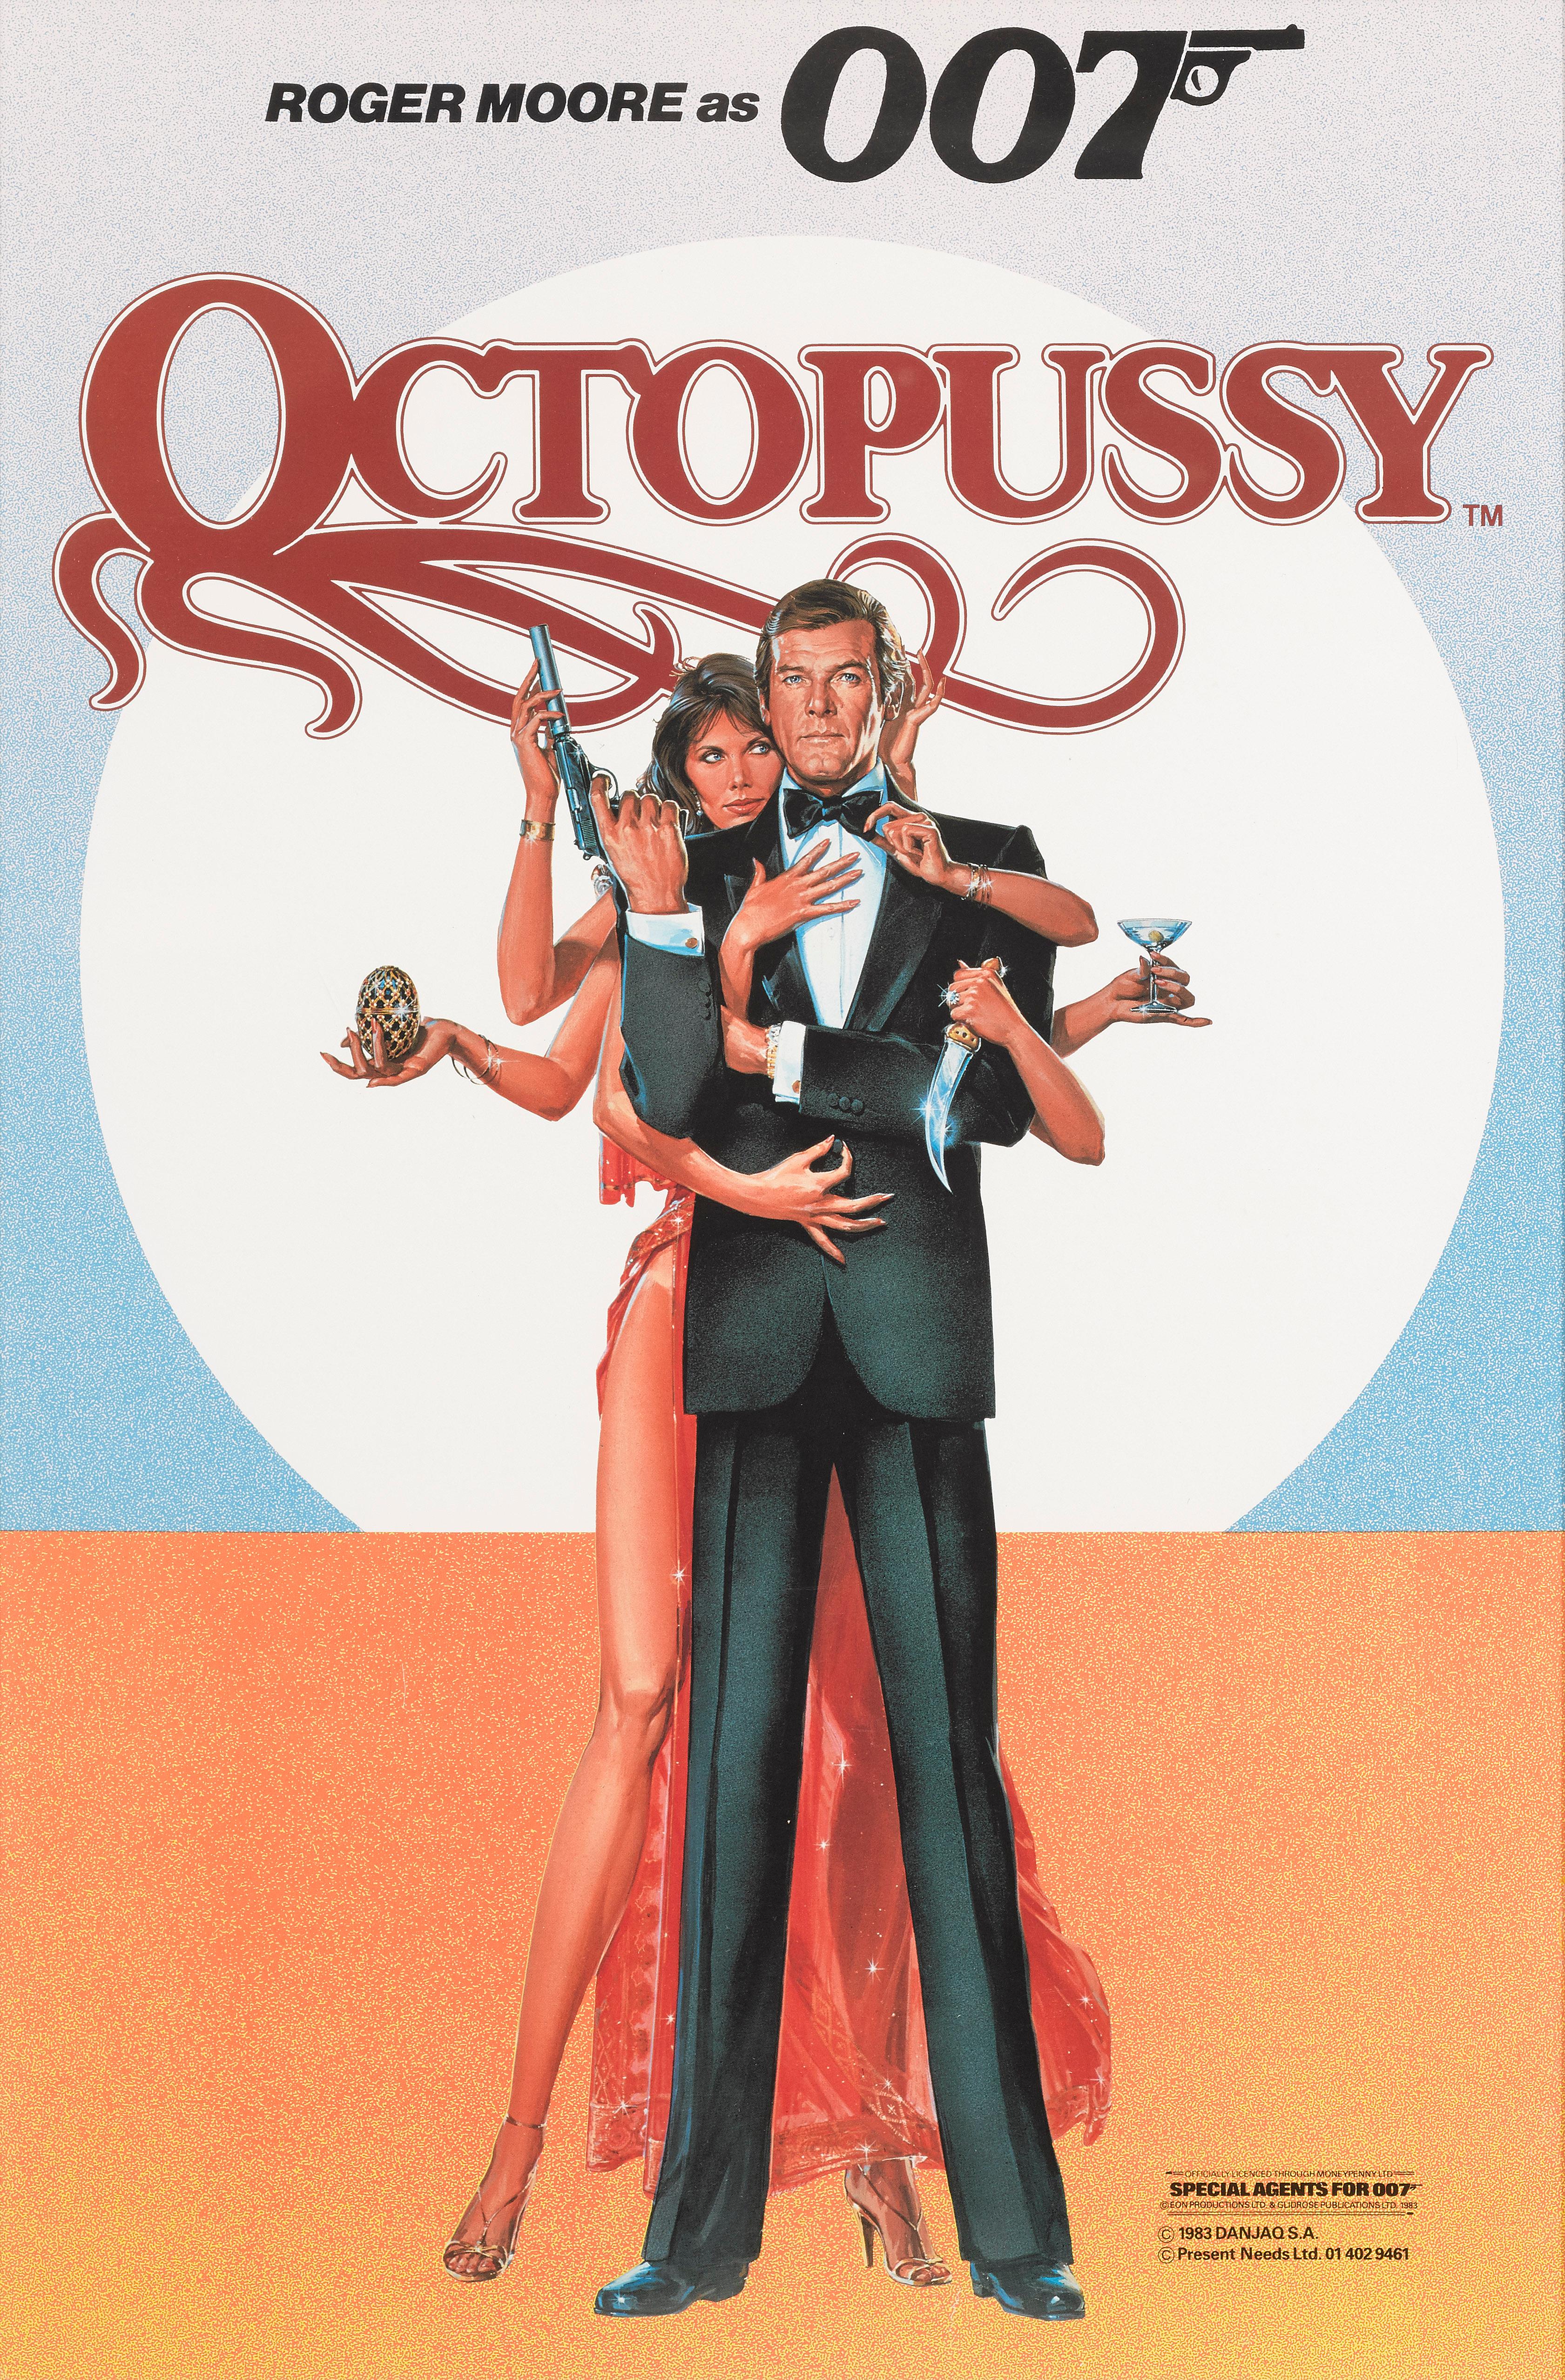 Originales britisches Vorab-Filmplakat für den James-Bond-Film Octopussy (1983).
Dies ist der dreizehnte Film der James-Bond-Reihe, der von Eon Productions produziert wird, und der sechste mit Roger Moore als James Bond in der Hauptrolle. Regie